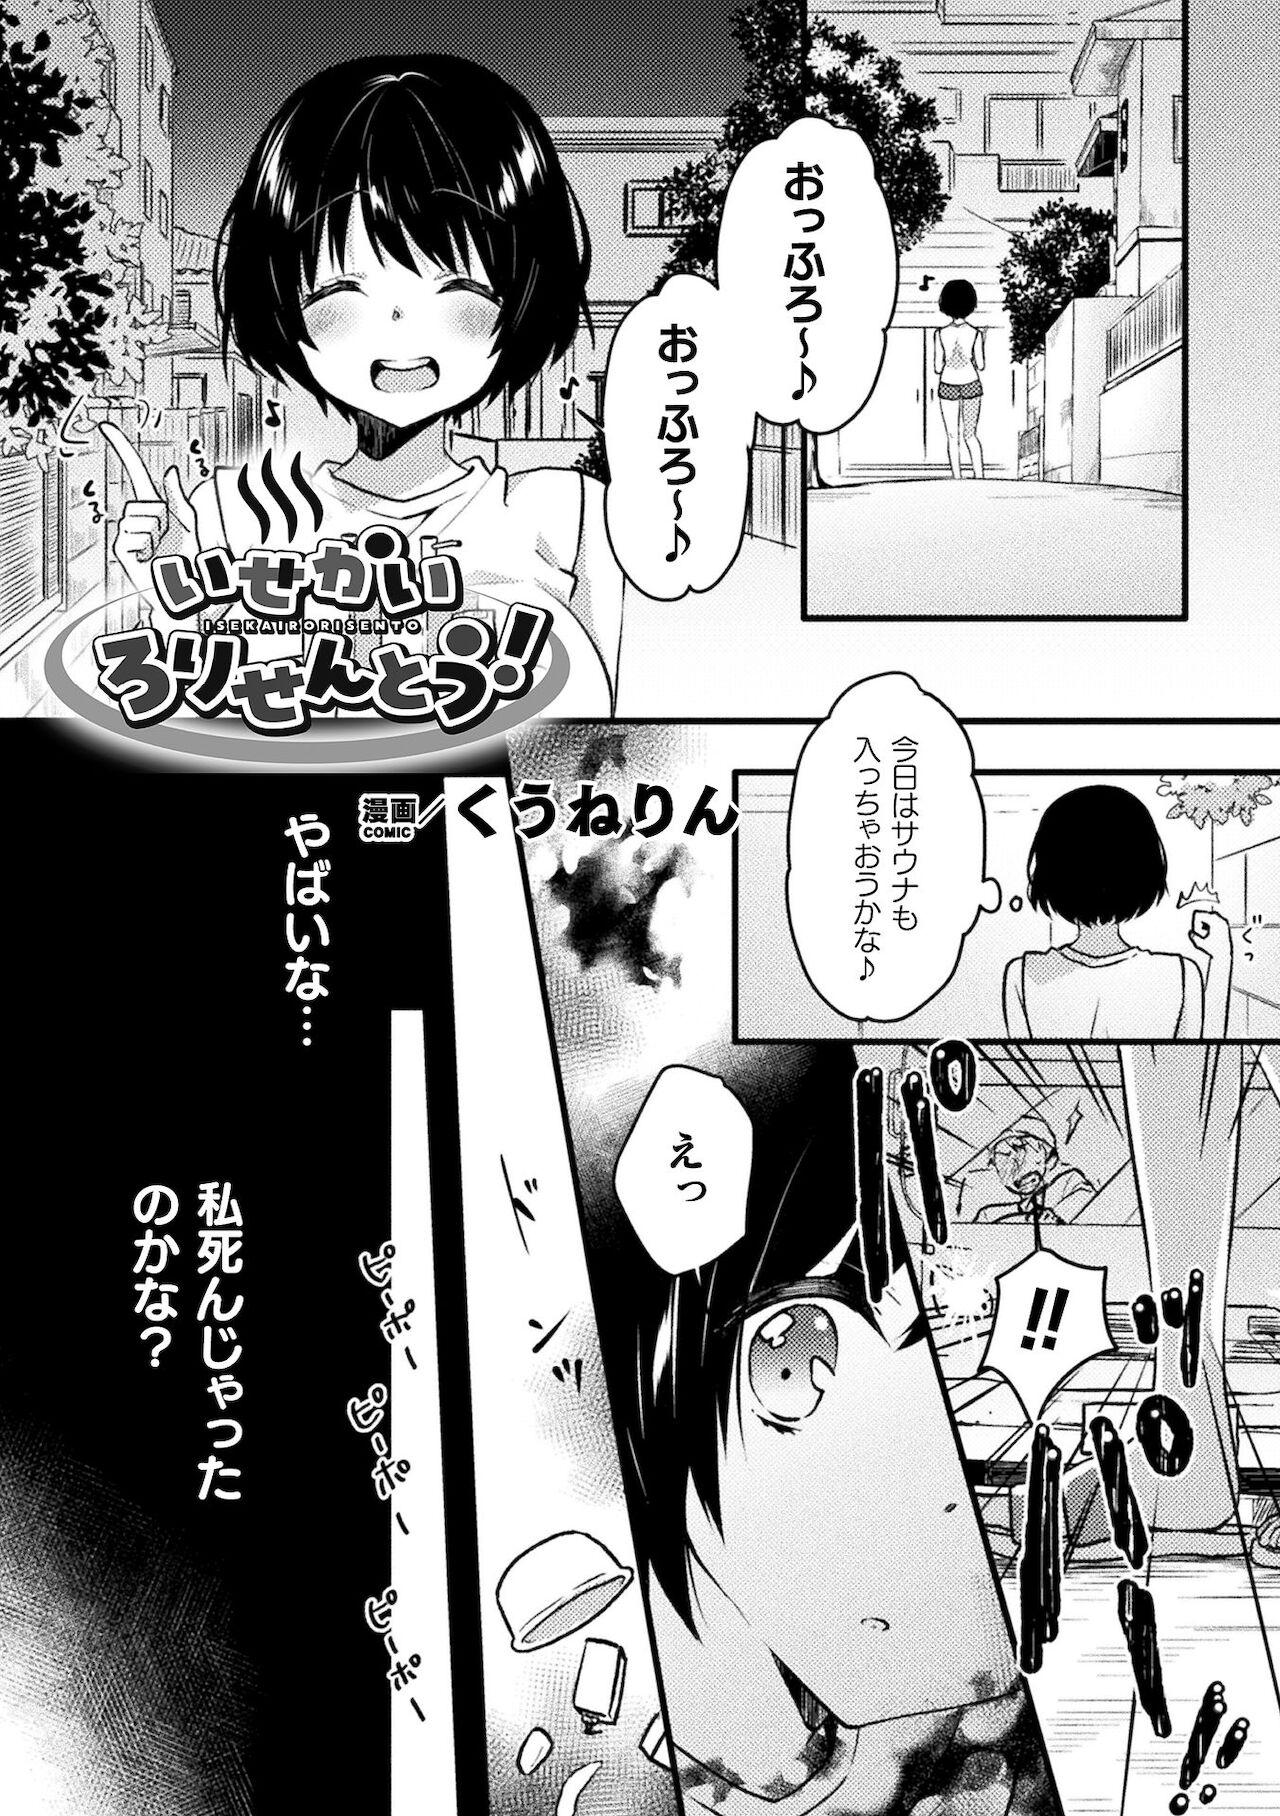 Girl 2D Comic Magazine Loli One Yuri Ecchi Loli ga Onee-san o Semete mo Ii yo ne! Vol. 2 Body - Page 3